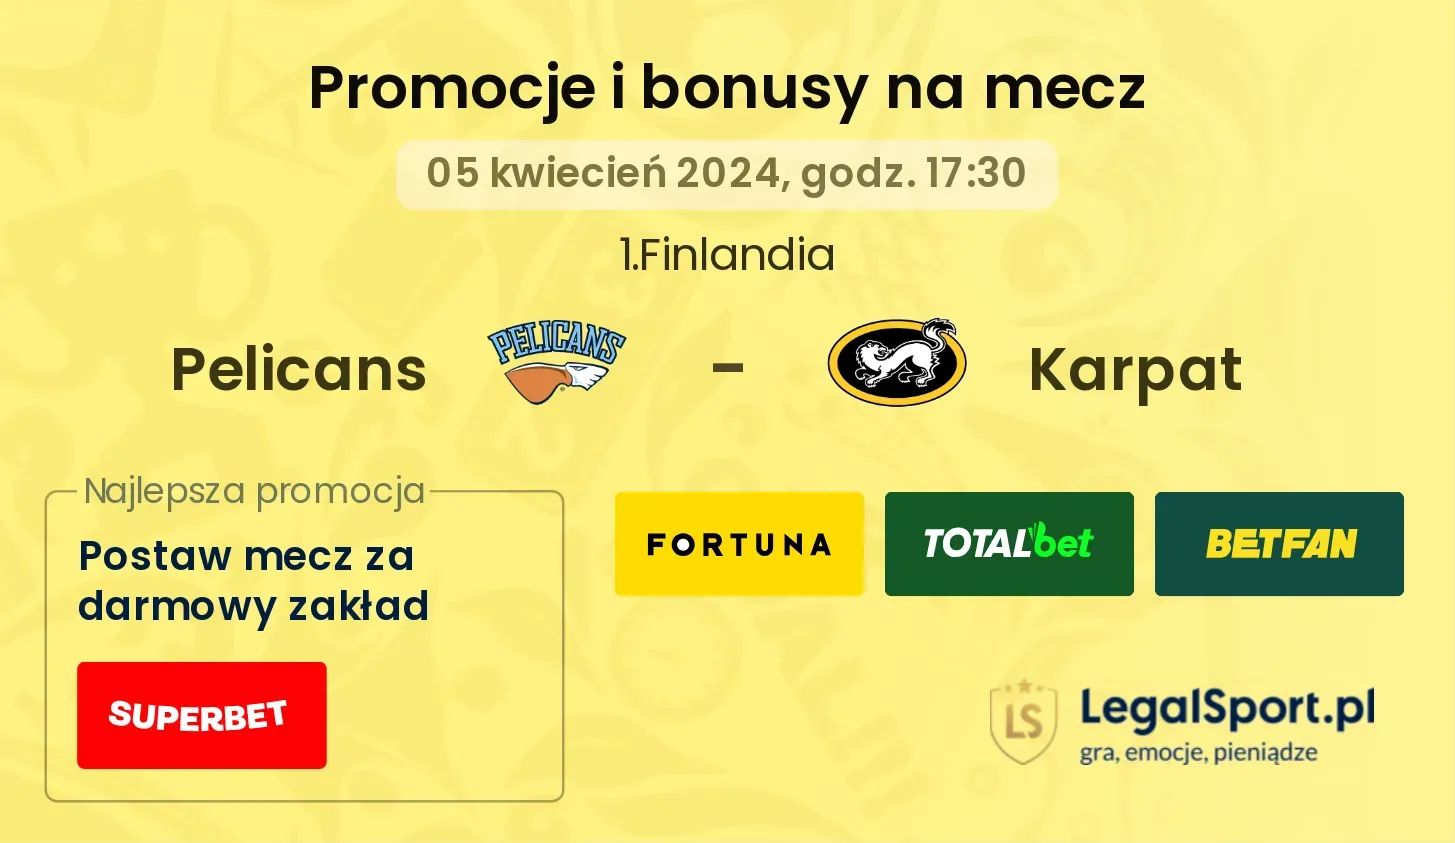 Pelicans - Karpat promocje bonusy na mecz